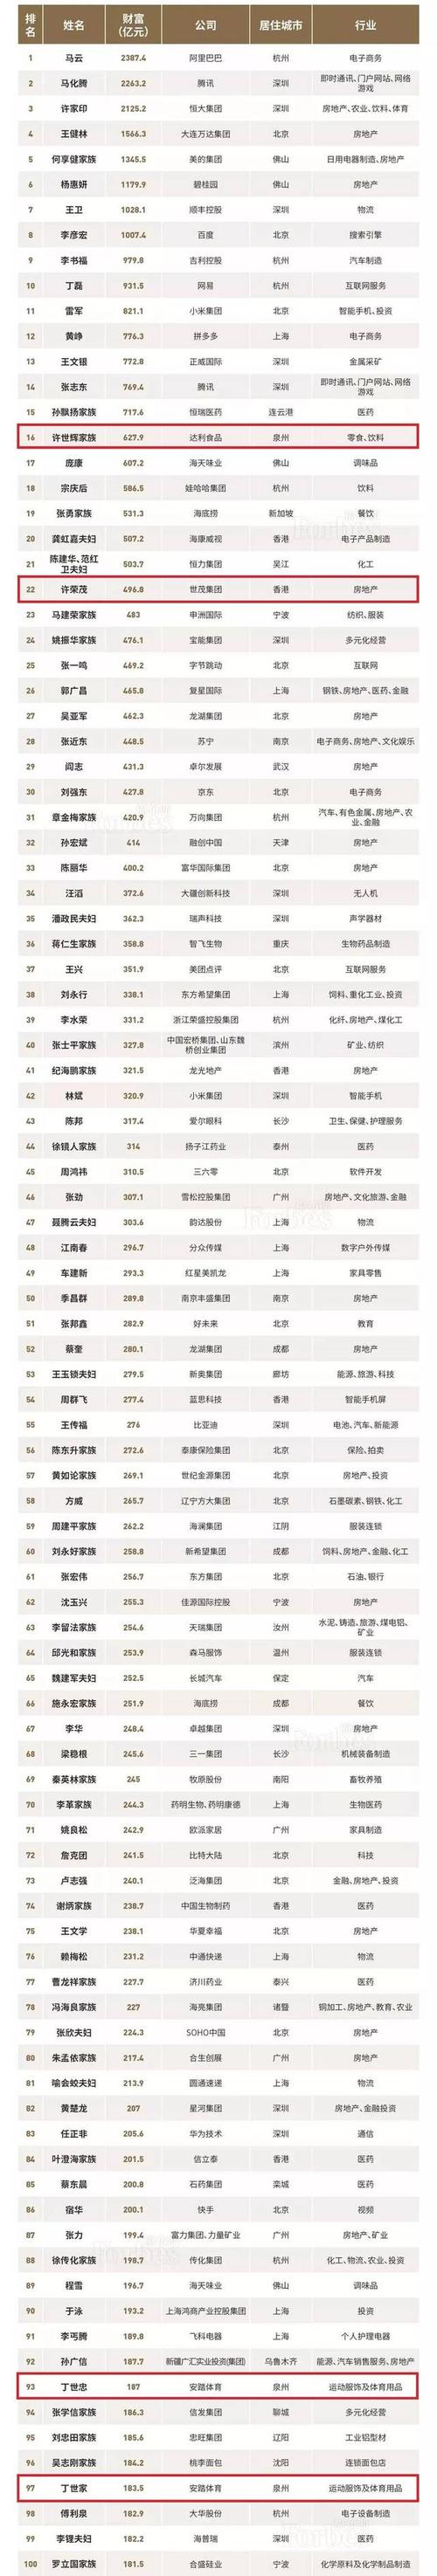 达利许世辉蝉联福布斯中国400富豪榜福建首富,位居全国第16名!